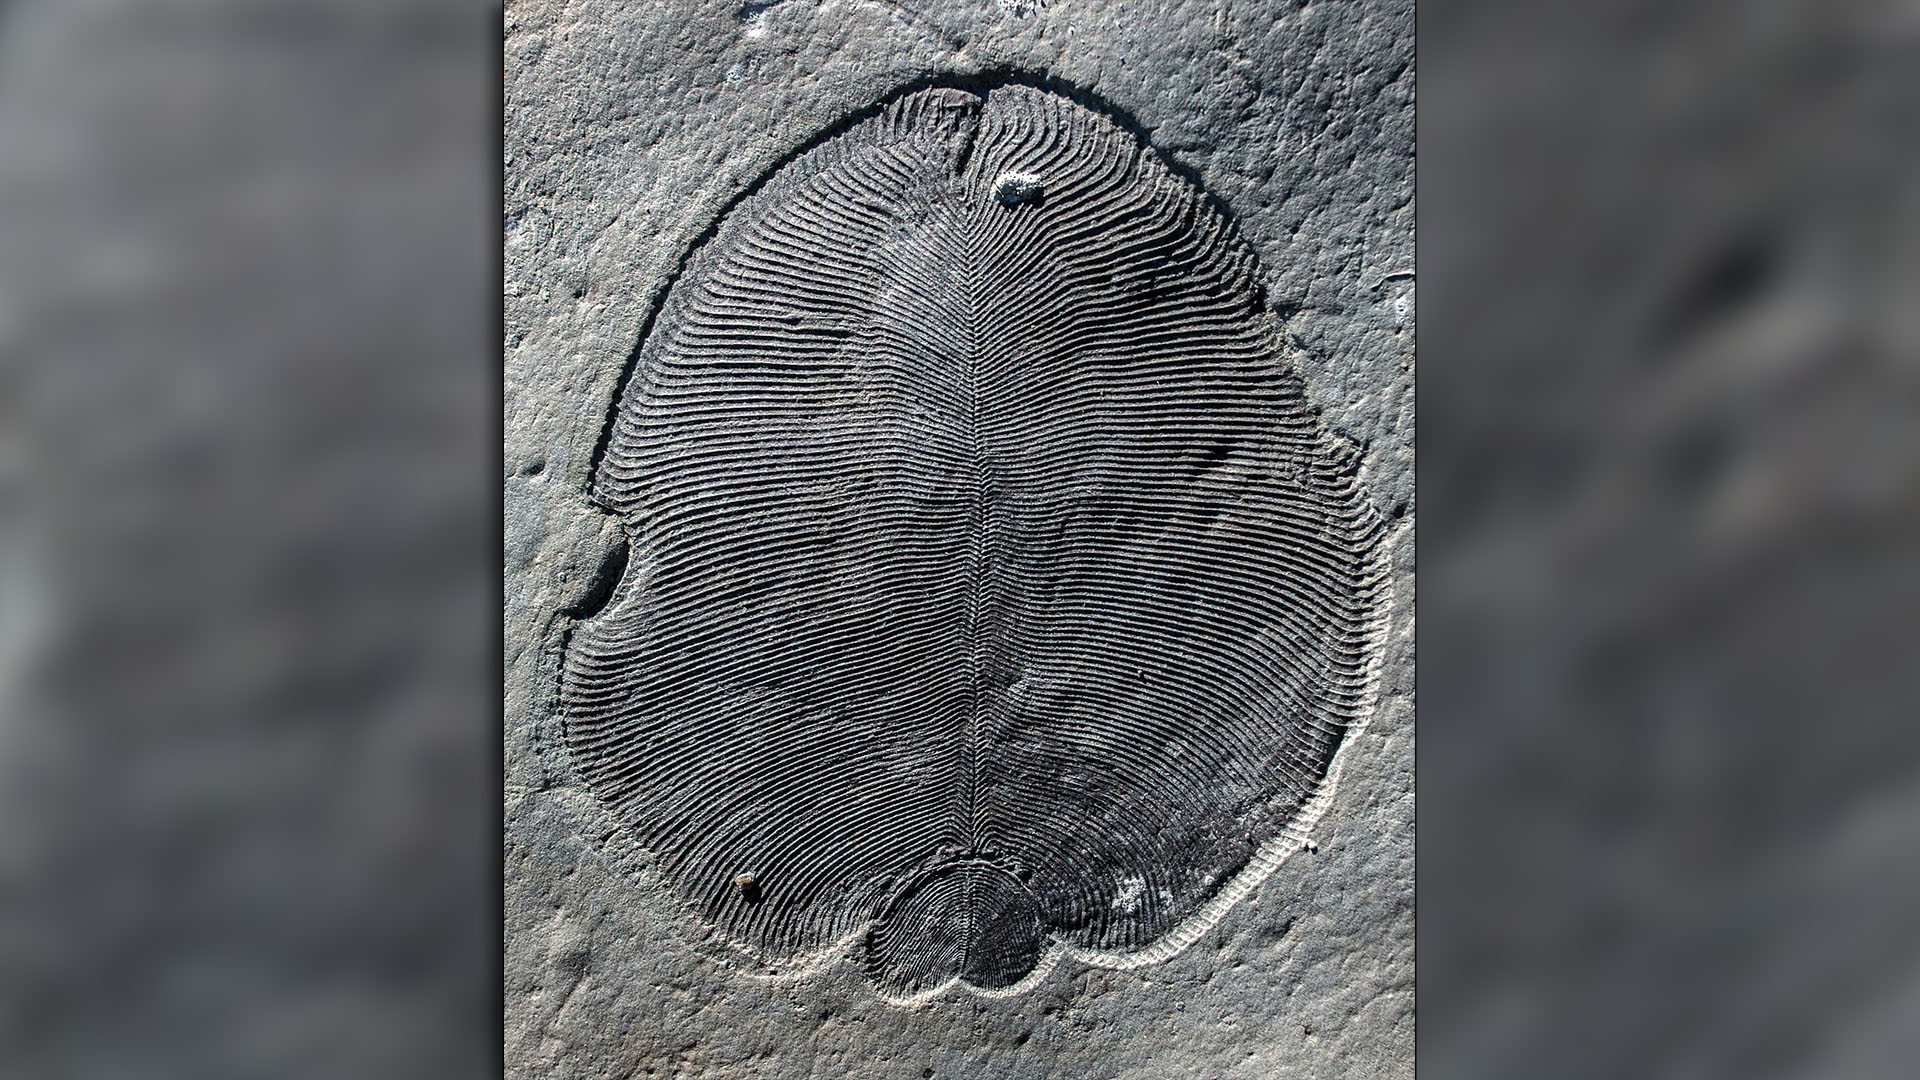 Dickinsonia es el animal ancestro del hombre más antiguo conocido de la Tierra. Eran ovalados y planos, medían varias decenas de centímetros de longitud y vivían en el fondo de los océanos